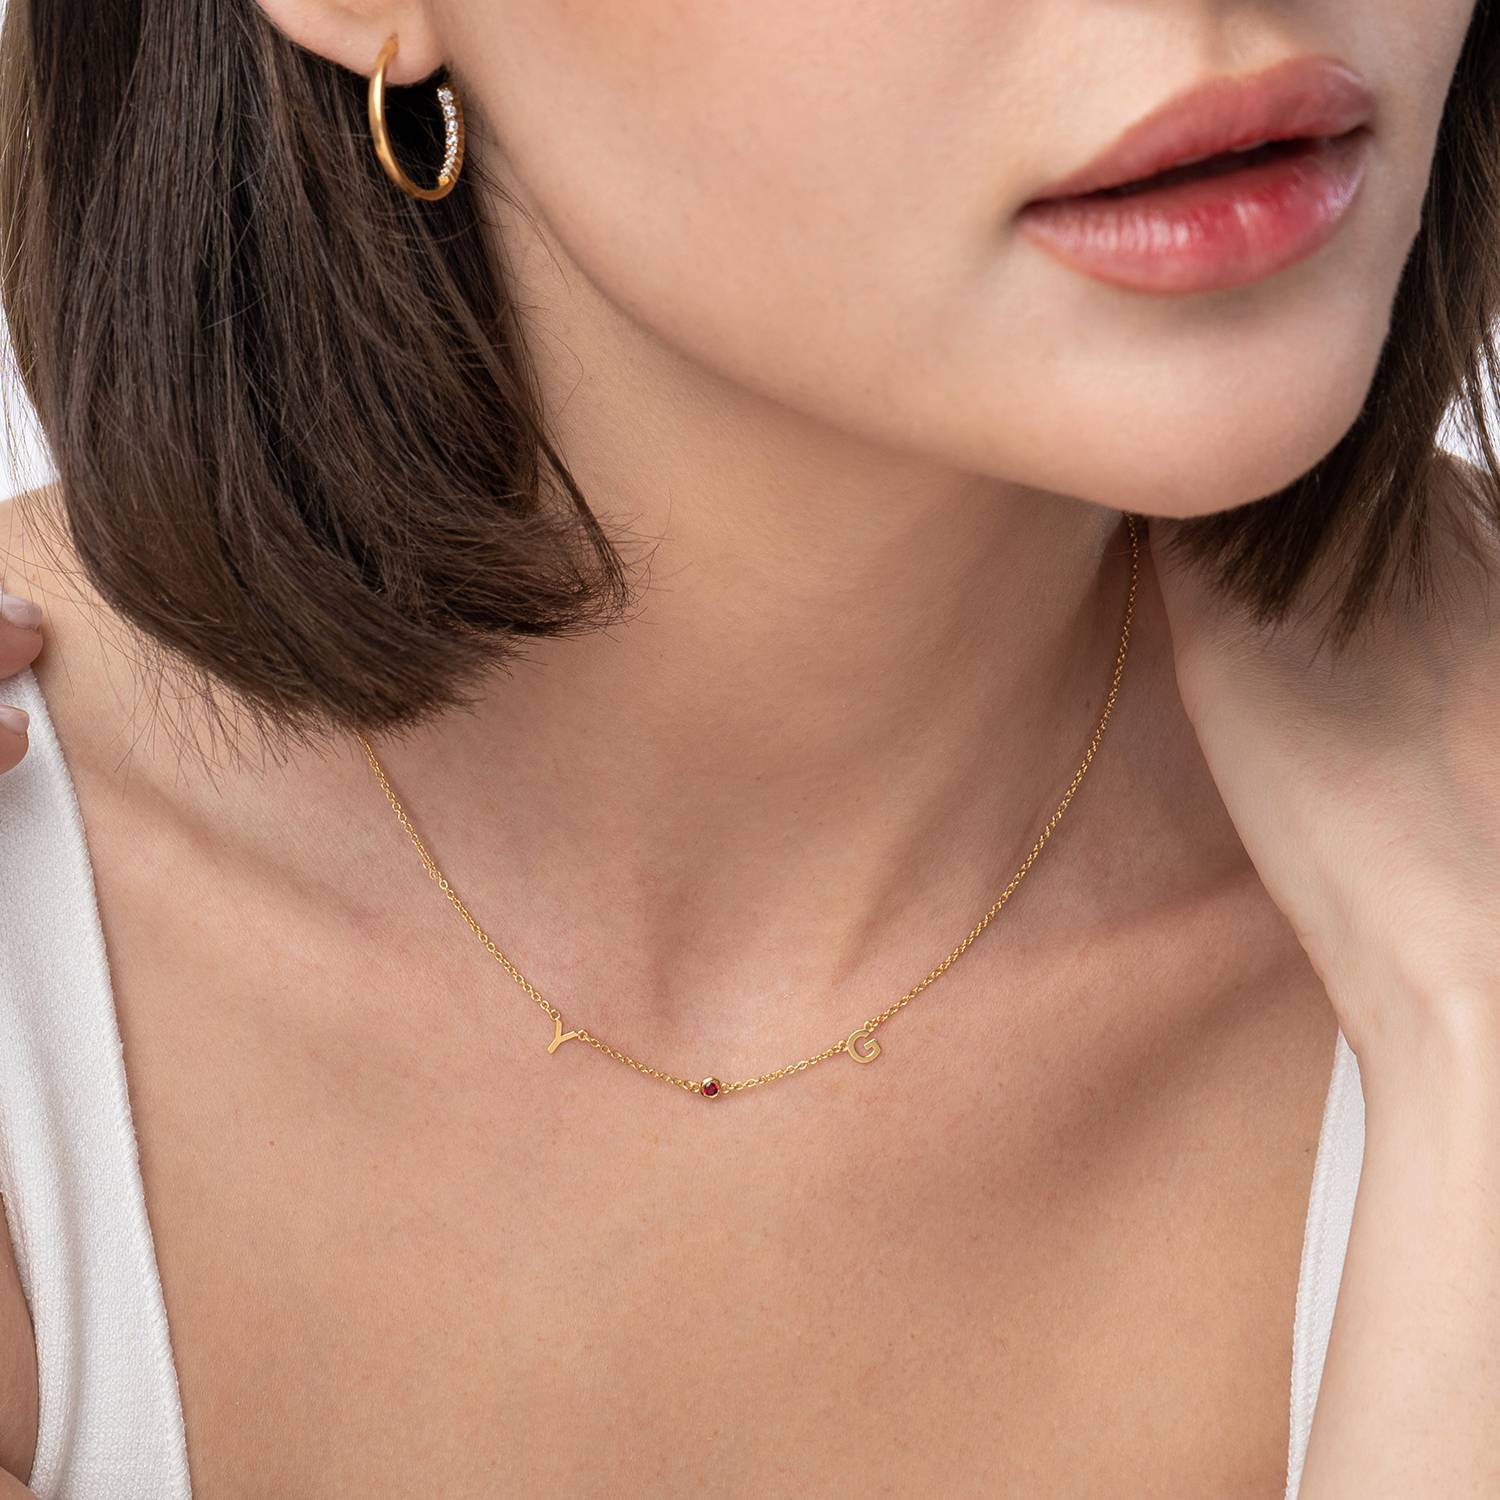 Mia Initialen Halskette mit Edelsteinen - 750er Gold-Vermeil-1 Produktfoto